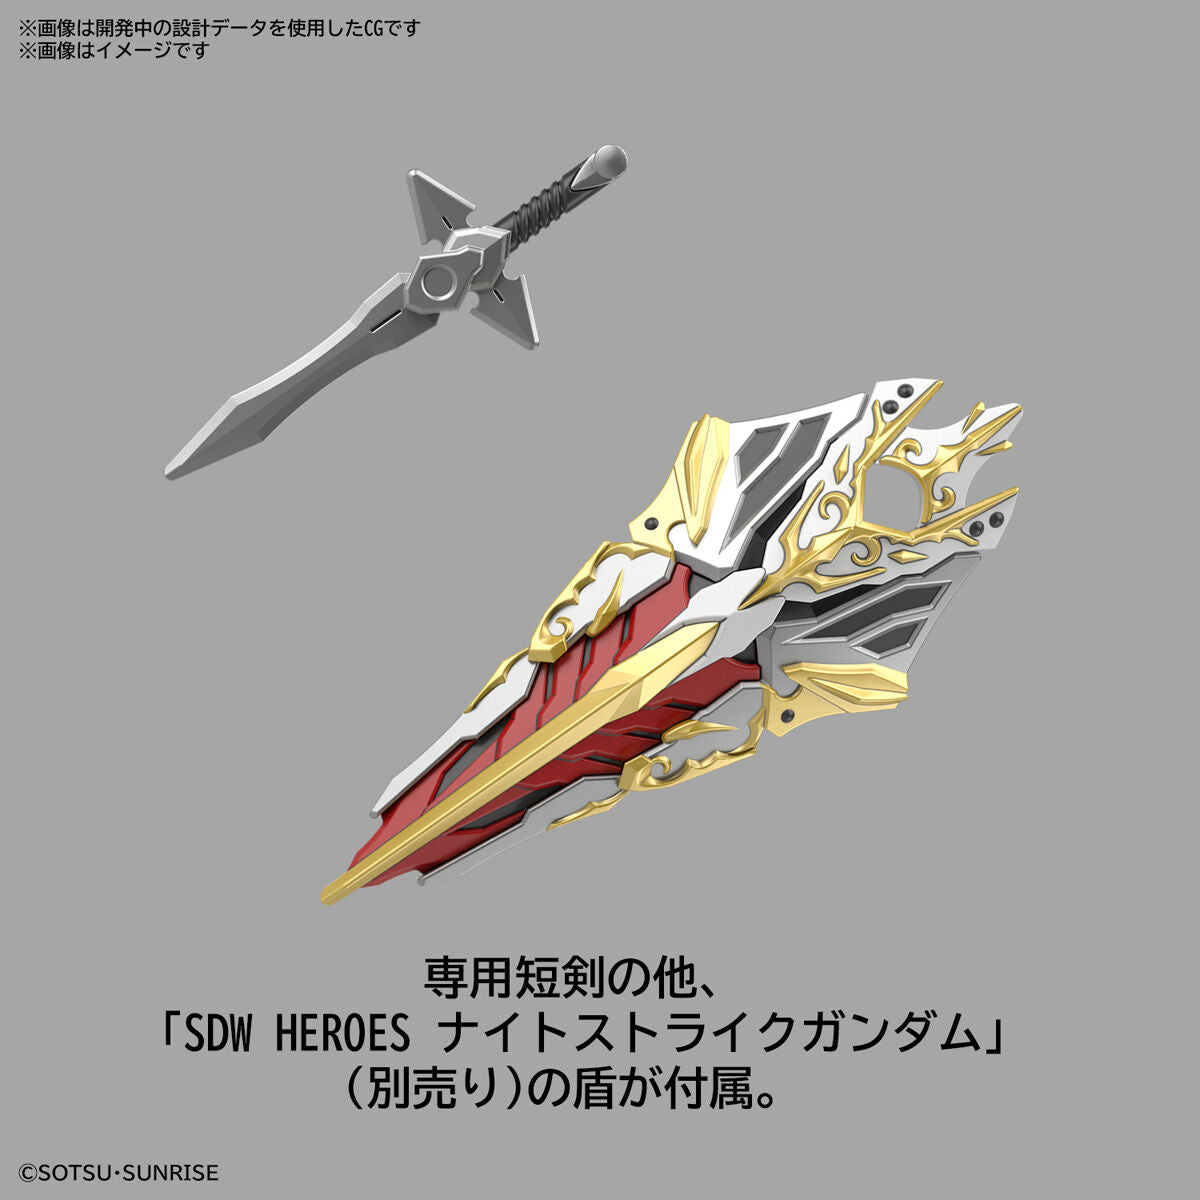 SDW Leif Gundam GP04